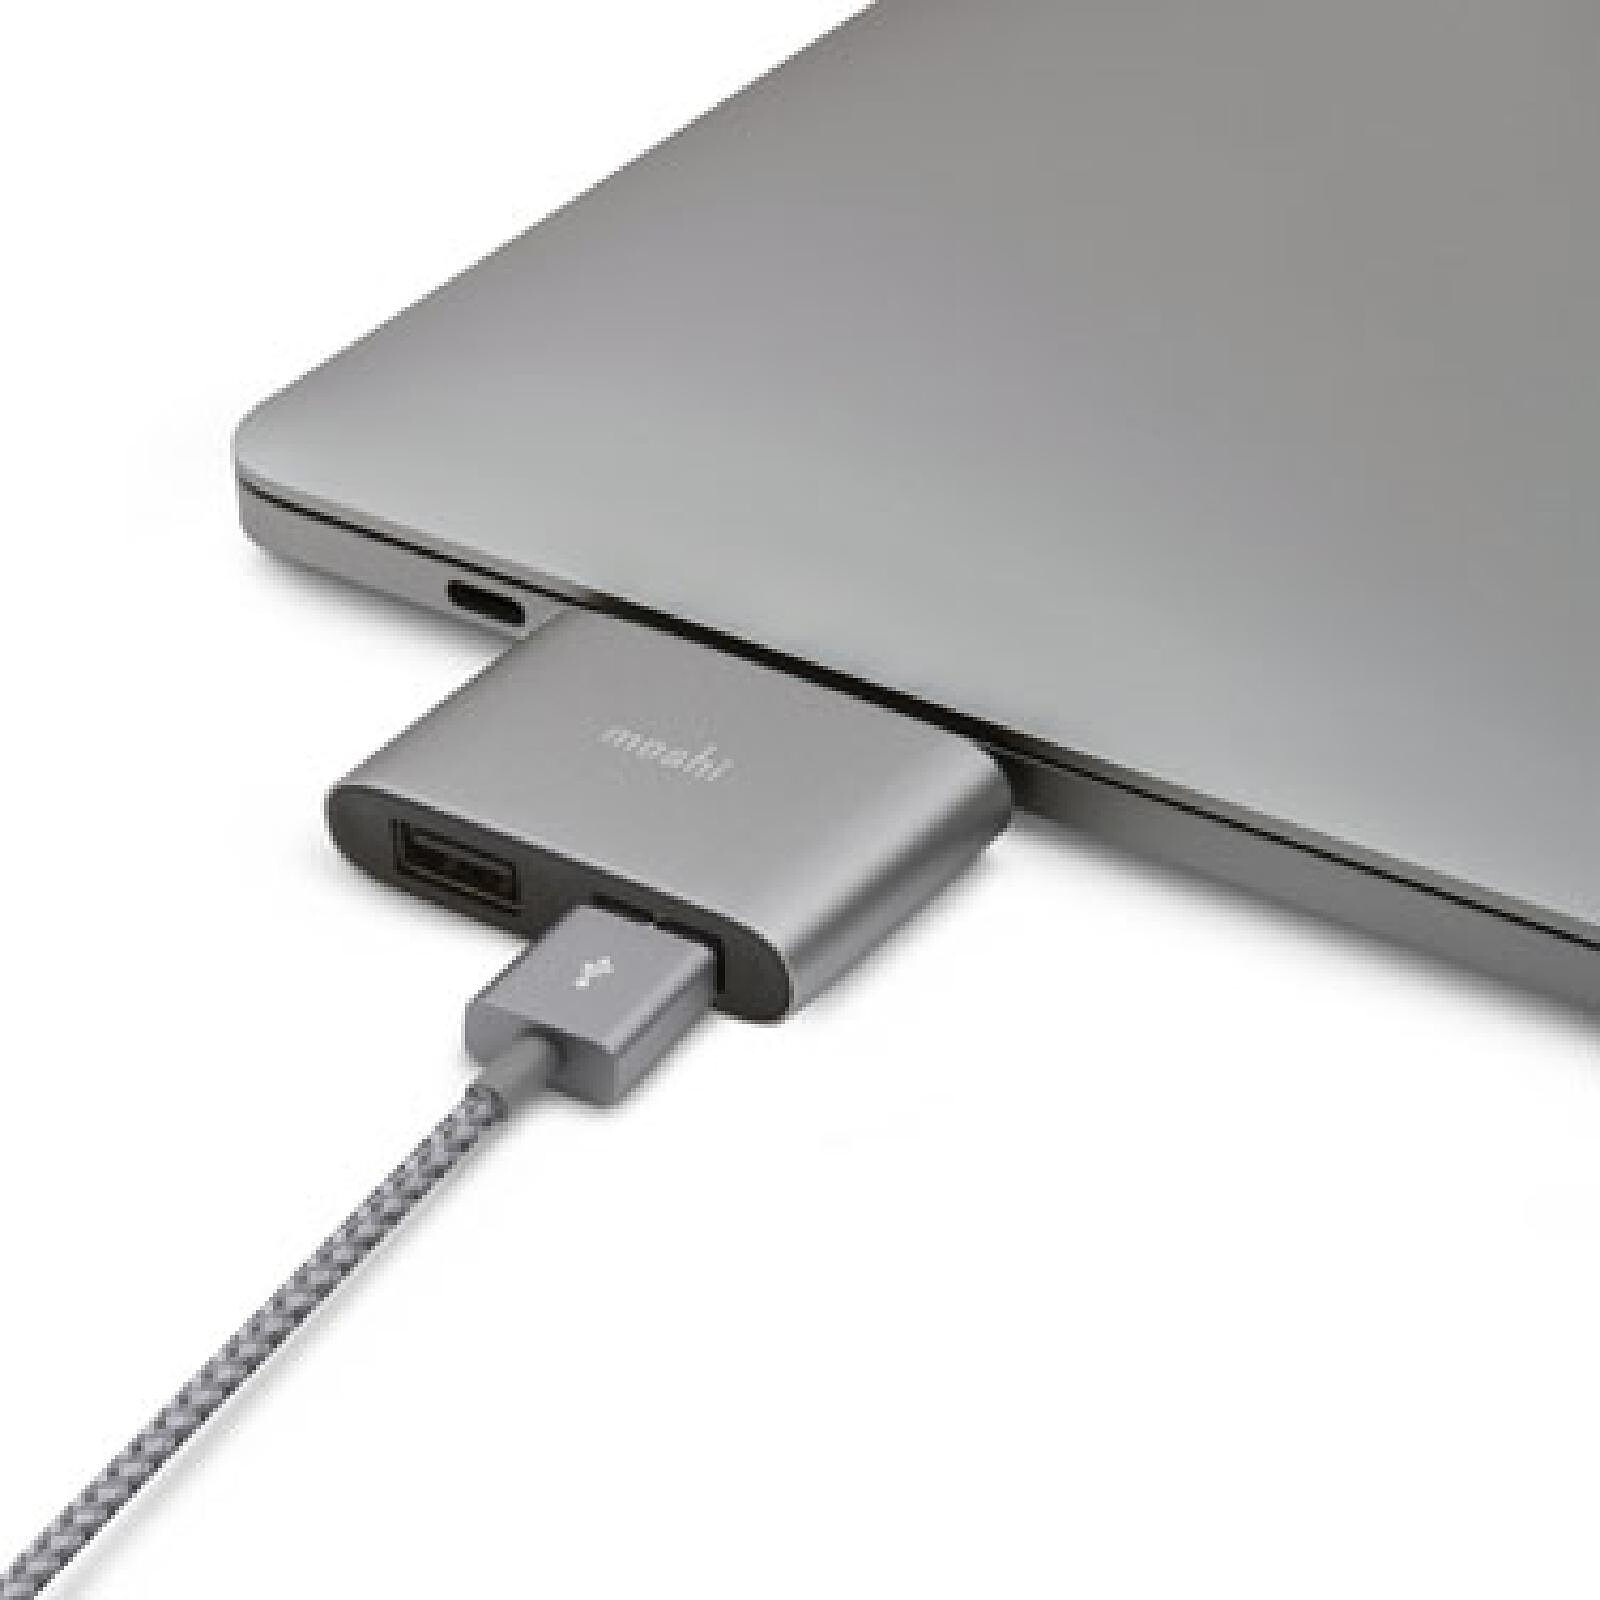 Adaptateur LOGI USB-C vers A - Accessoires Logitech